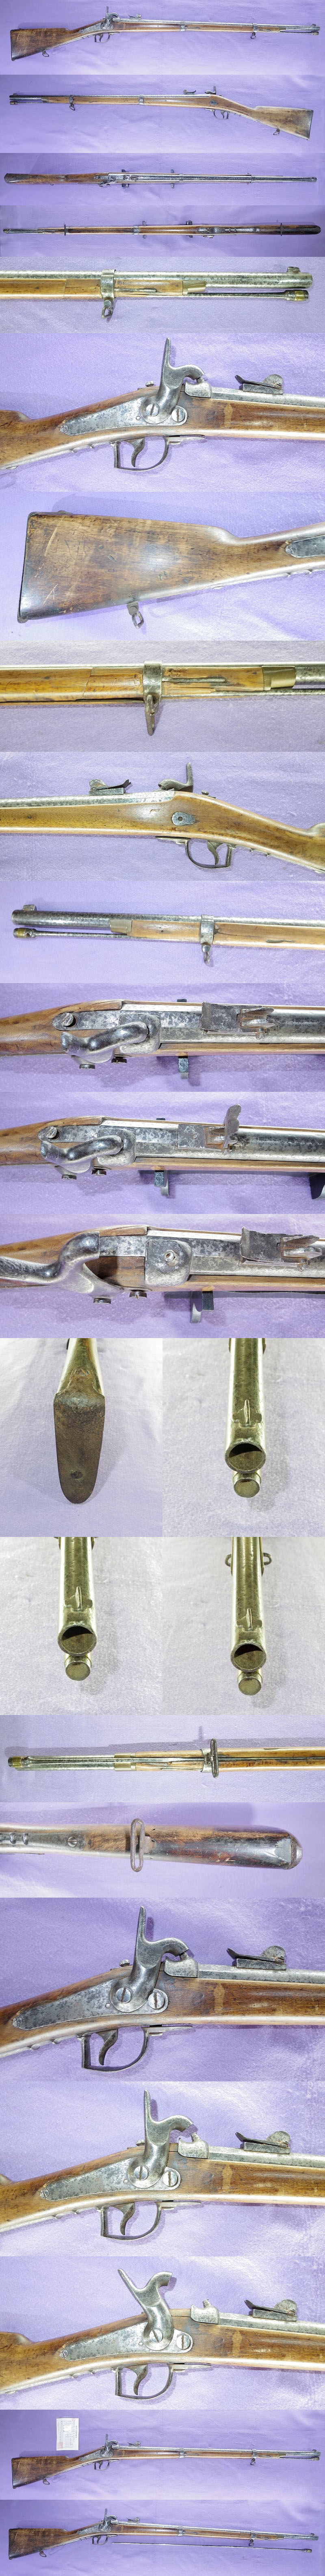 スティーブンス銃(オランダ製ミニエー銃) 奈良各部分画像